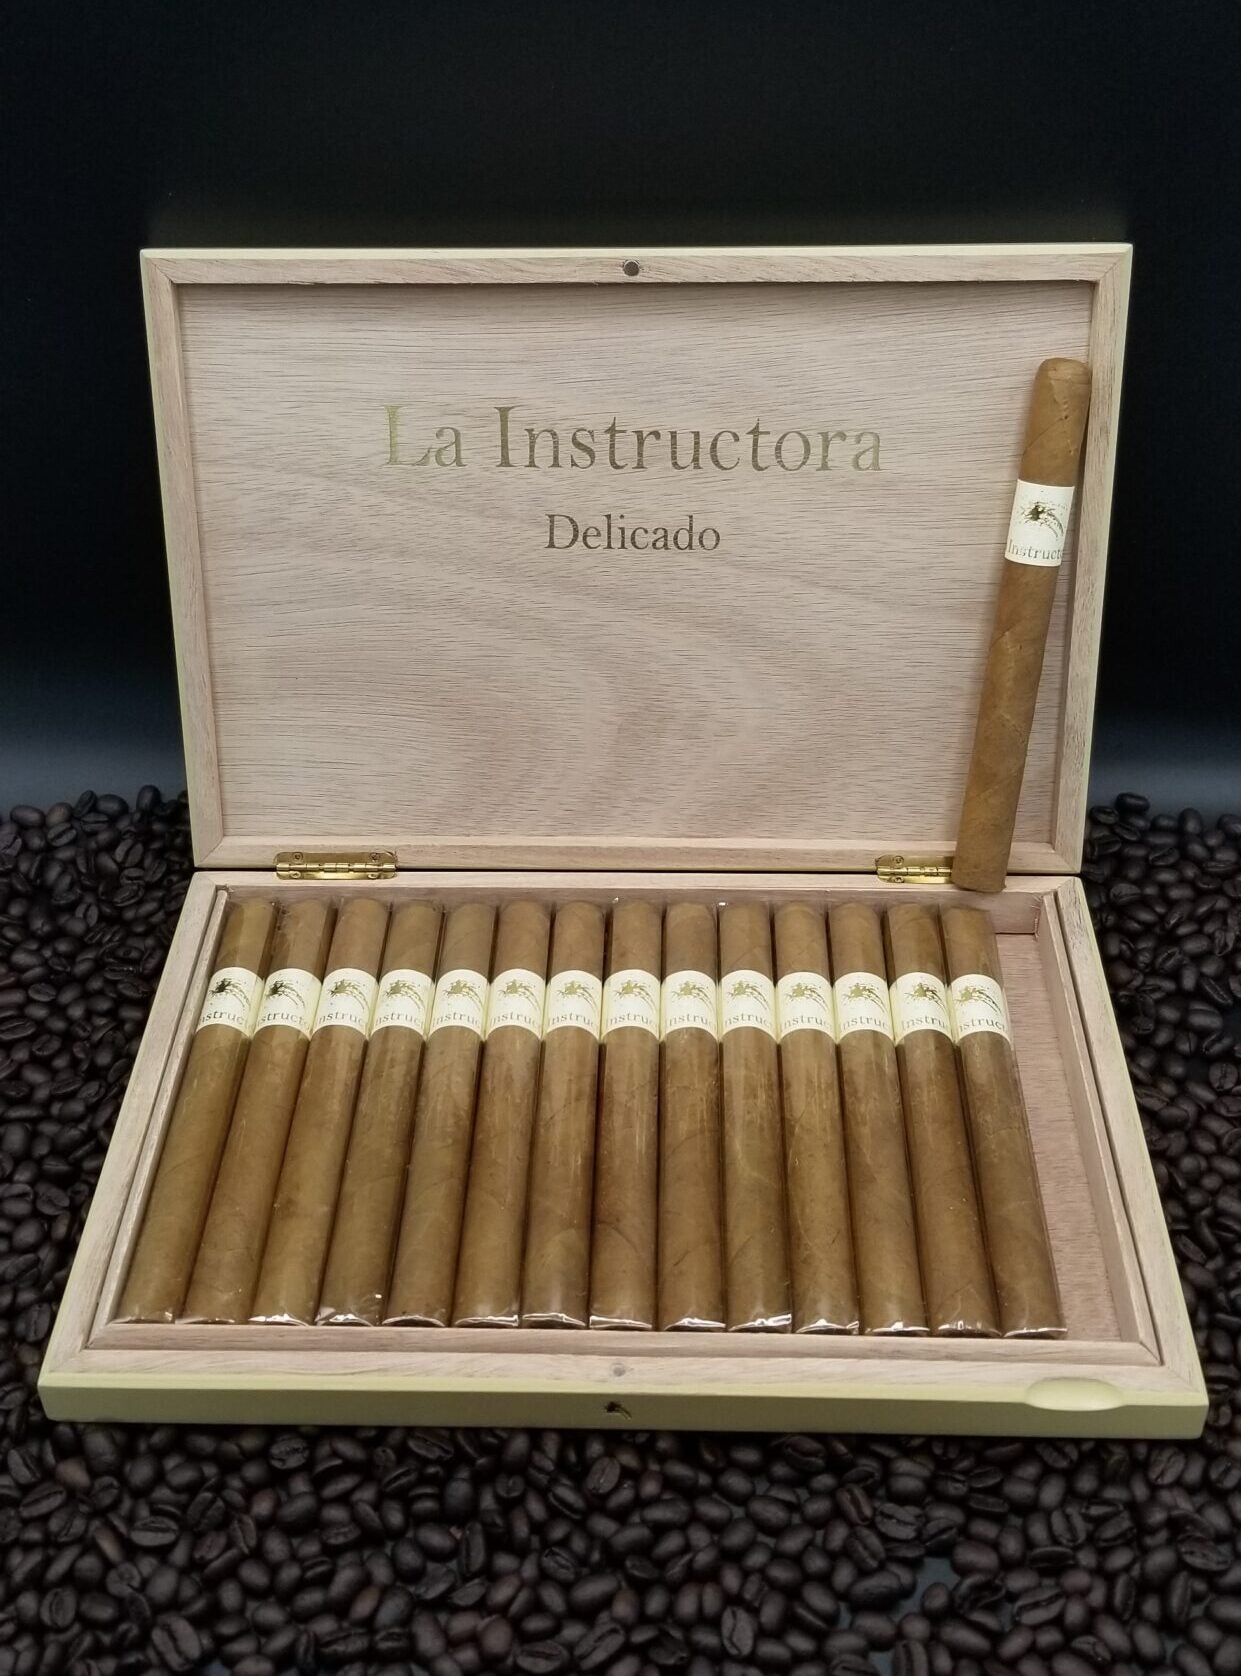 La Instructora Delicado Presidente cigars supplied by Sir Louis Cigars